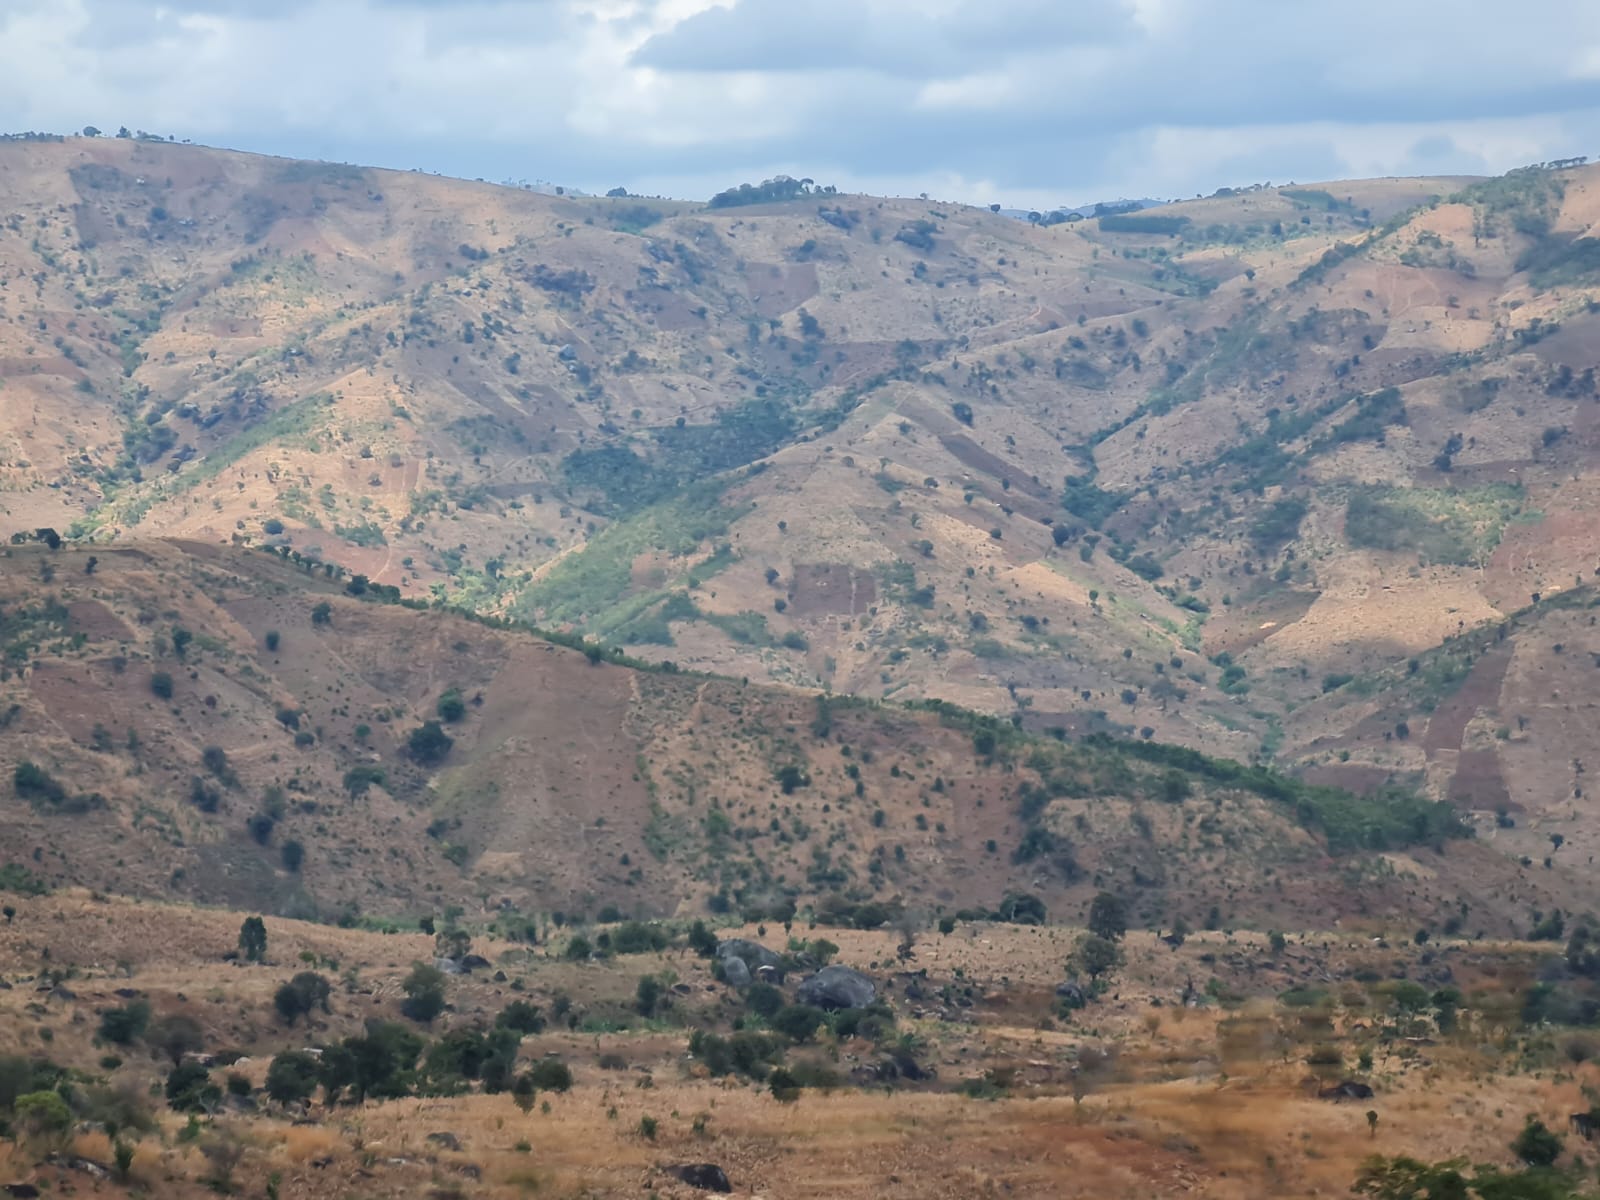 Blick auf das Hochland in der Region Tansania